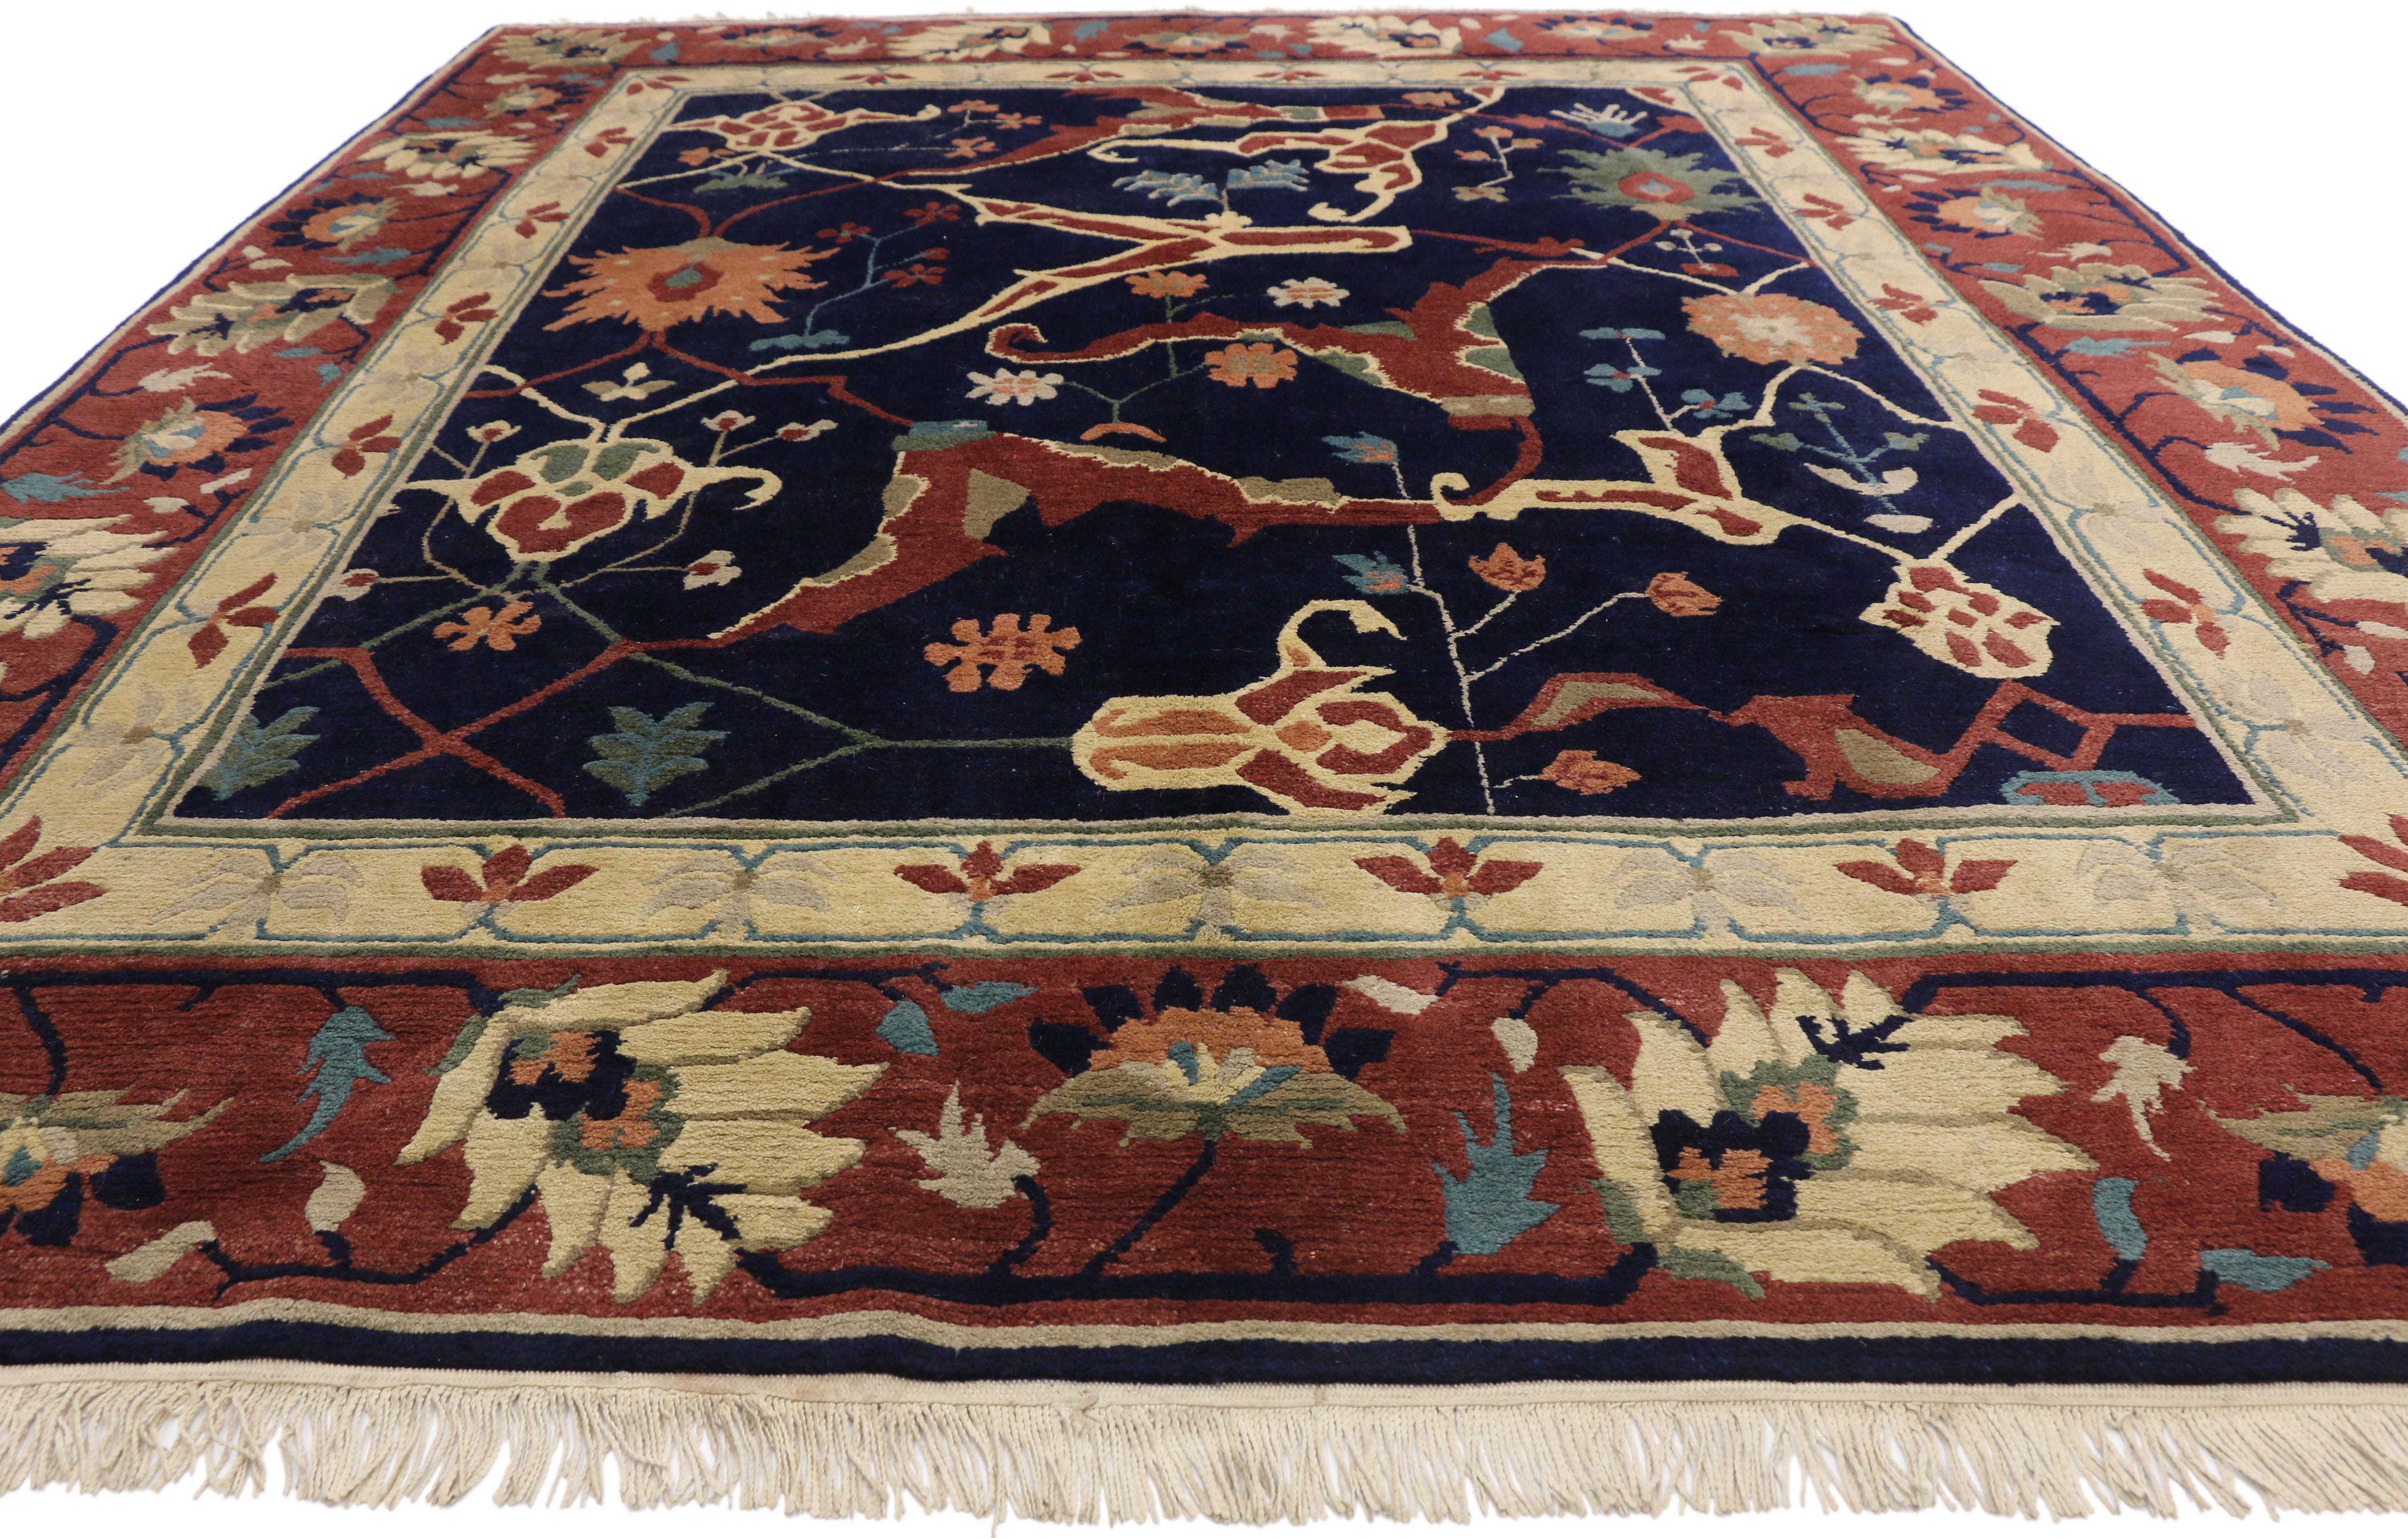 Colonial américain Tapis tibétain vintage avec motifs persans Serapi sur toute sa surface en vente